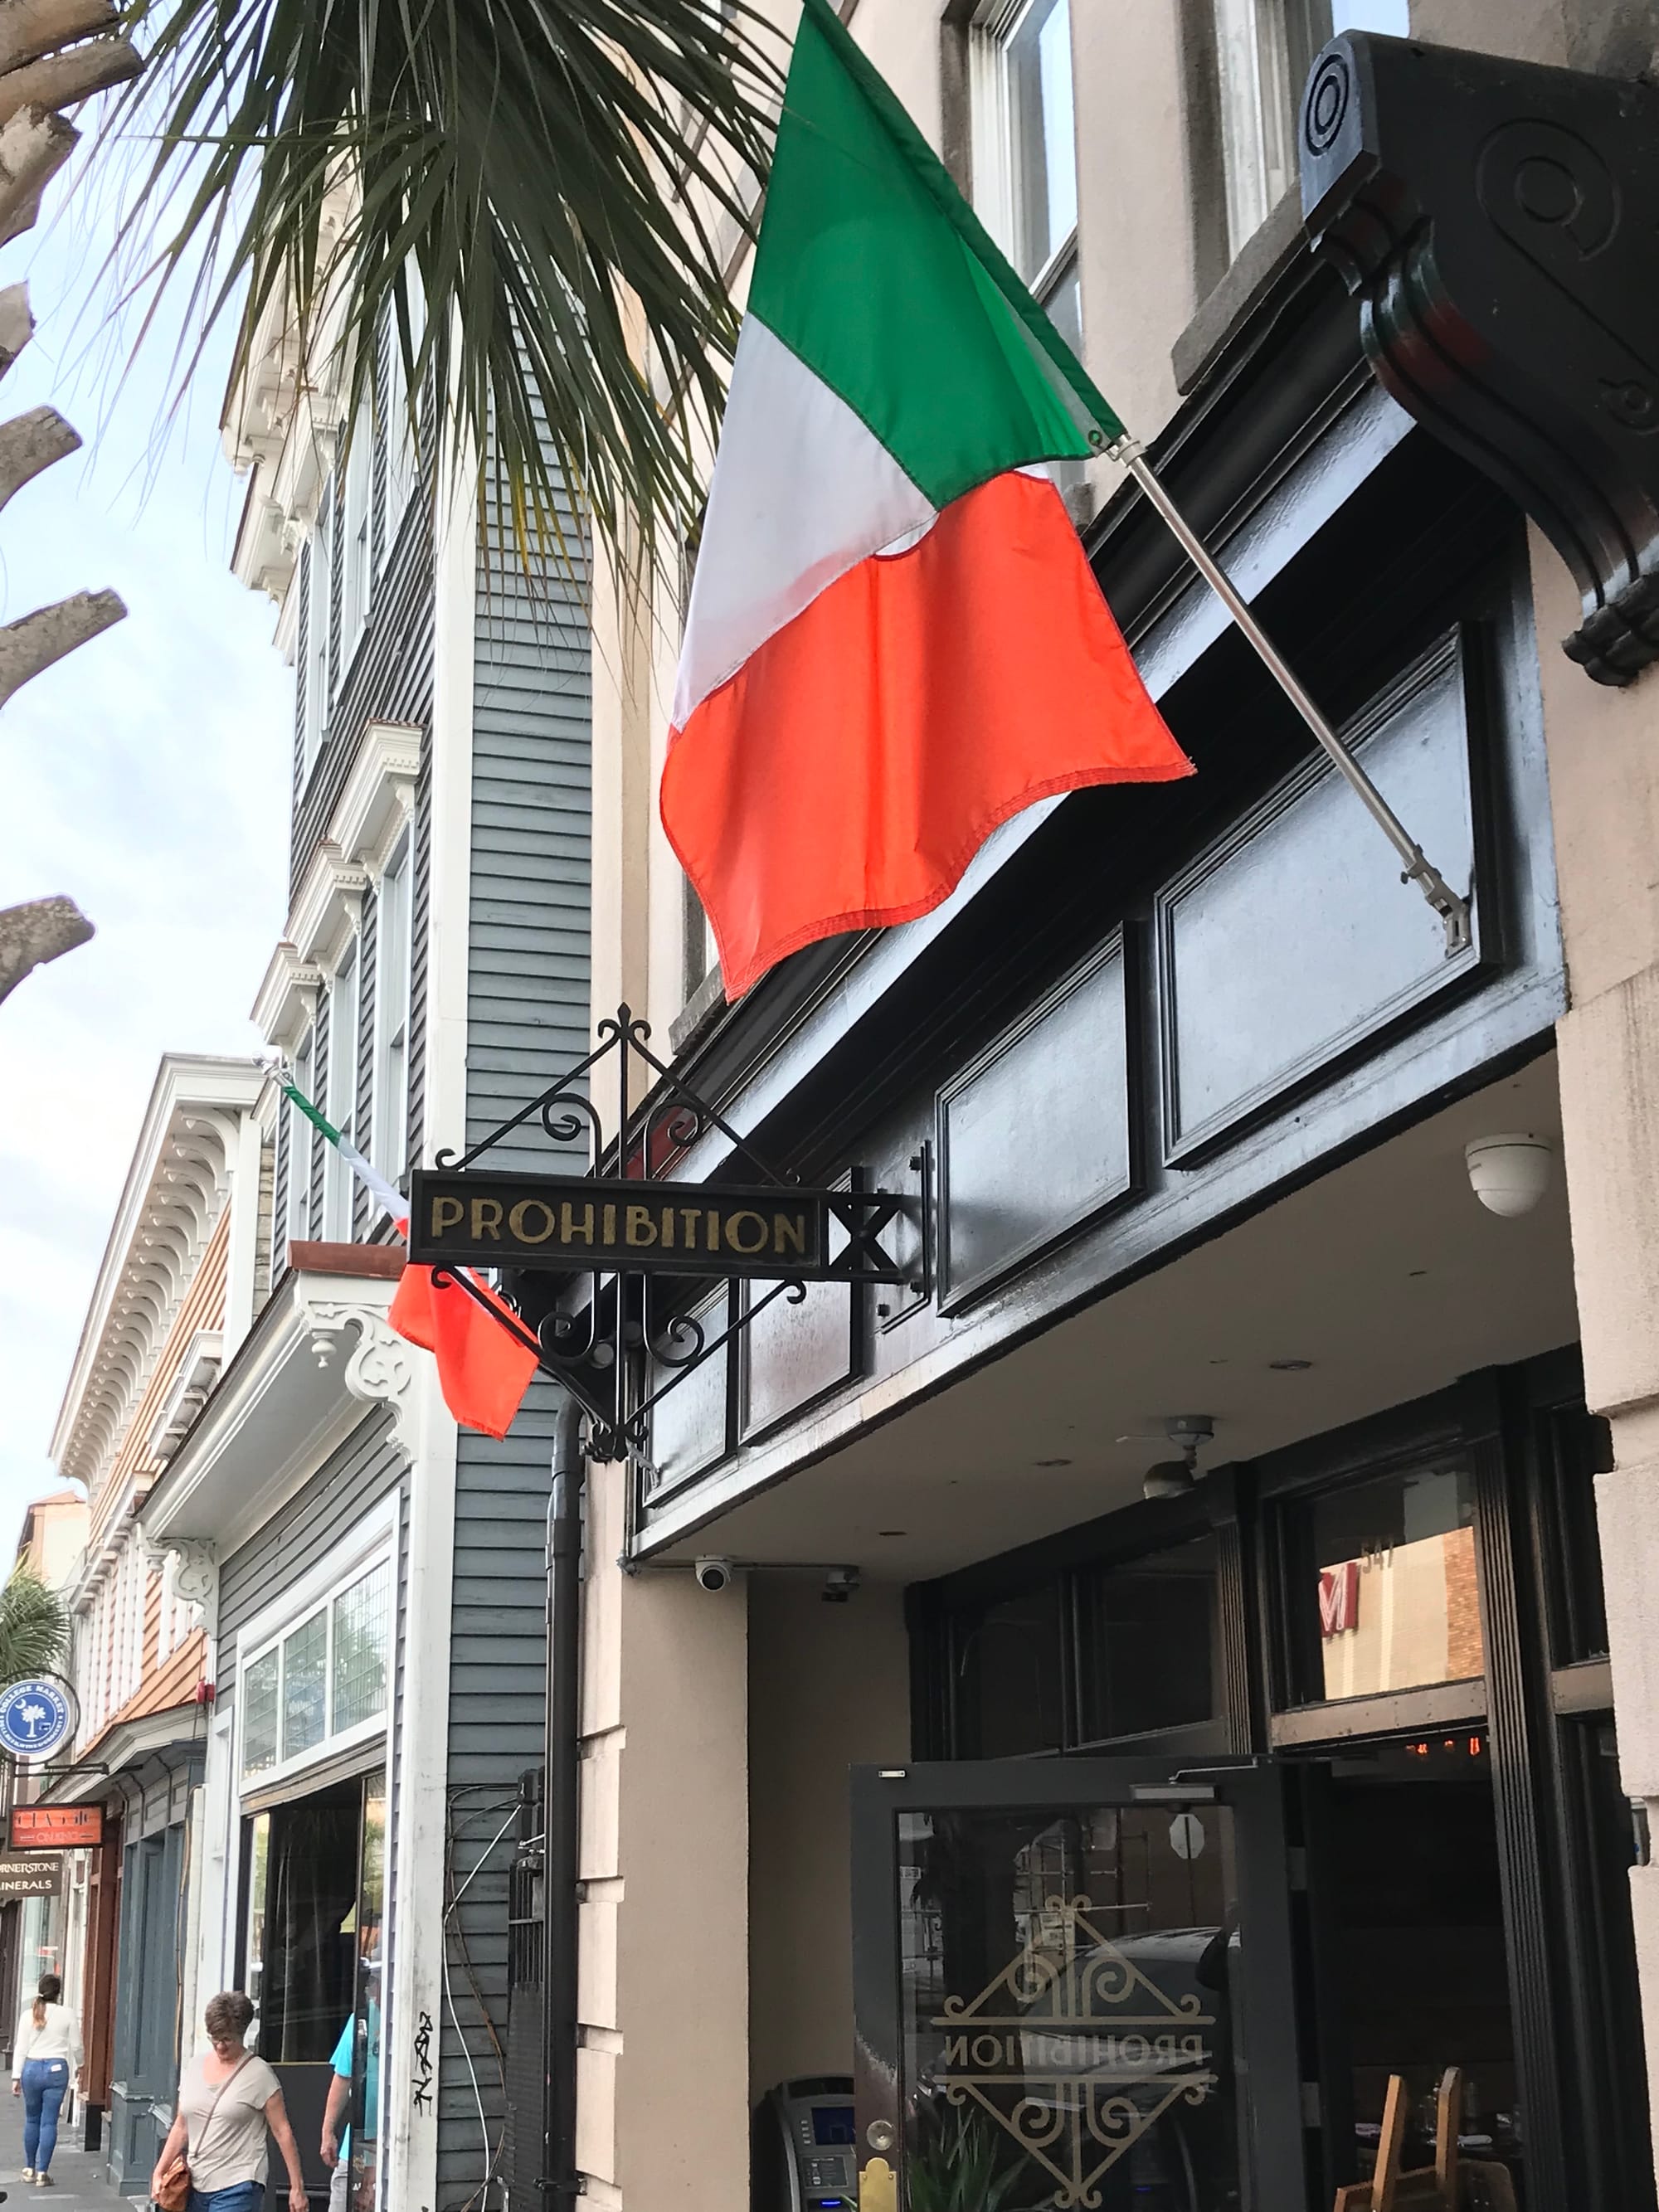 Irish Bars of Charleston